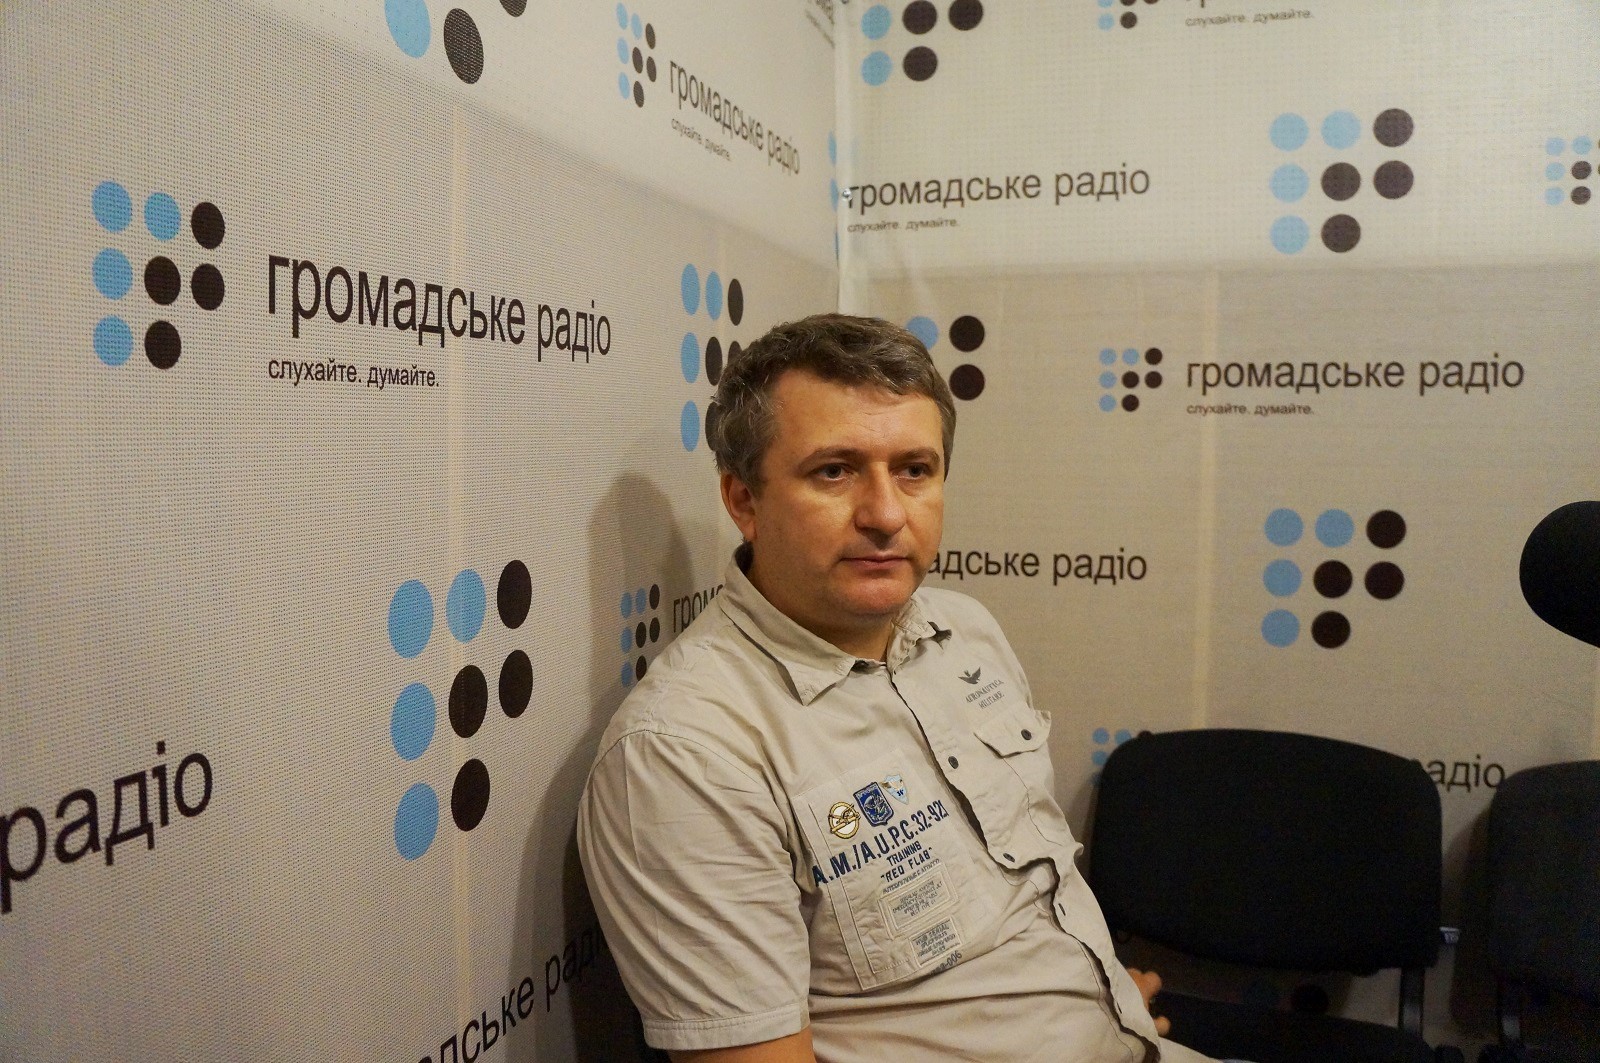 Гройсман в Польше говорил штампами и не смог подать Украину, — Романенко